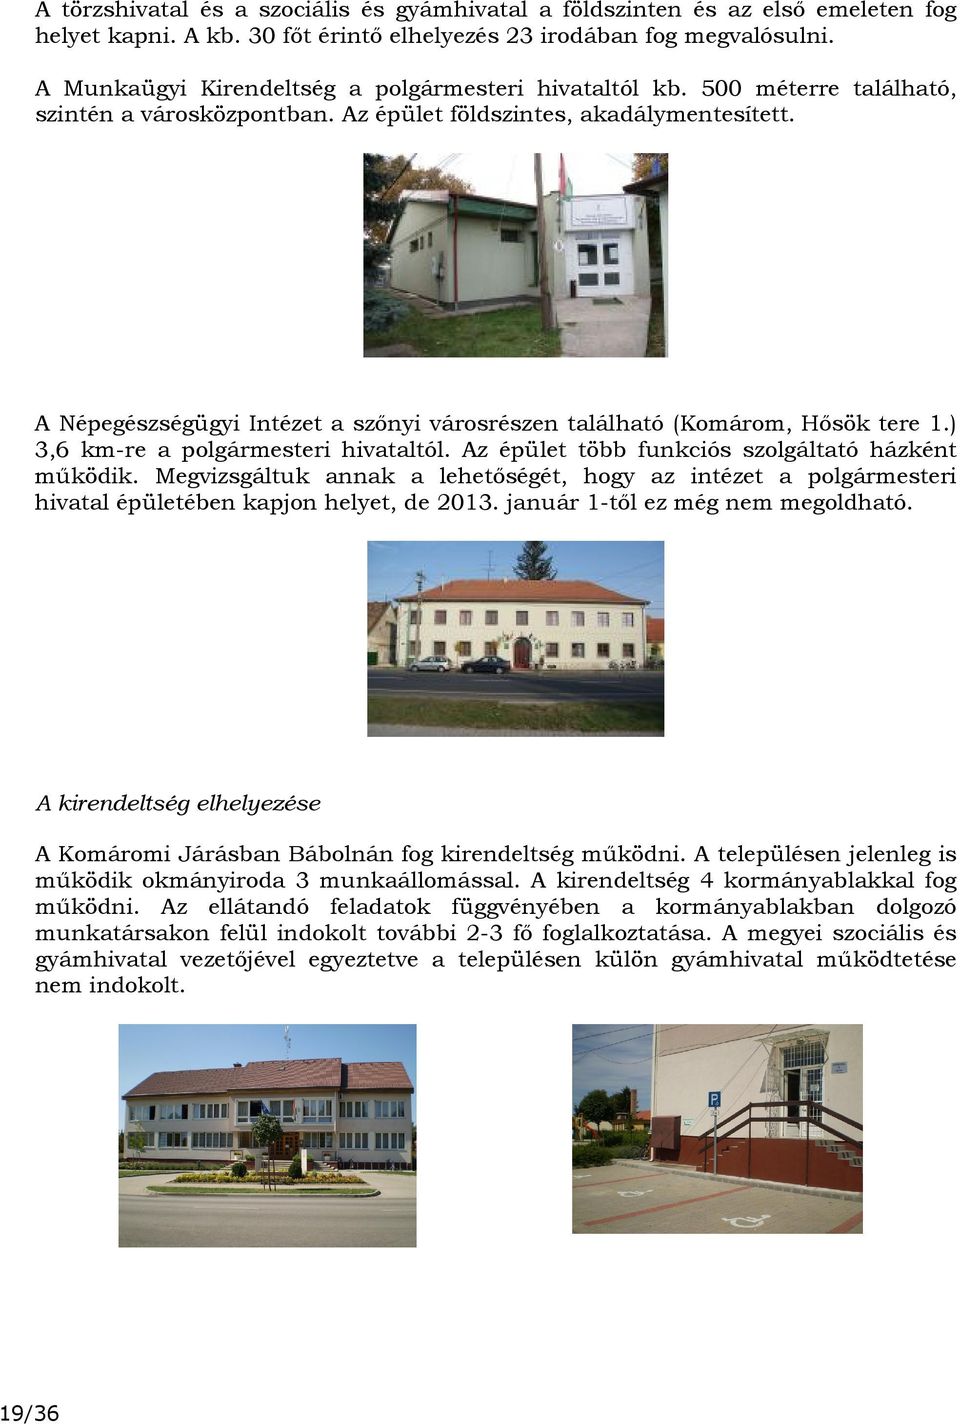 A Népegészségügyi Intézet a szőnyi városrészen található (Komárom, Hősök tere 1.) 3,6 km-re a polgármesteri hivataltól. Az épület több funkciós szolgáltató házként működik.